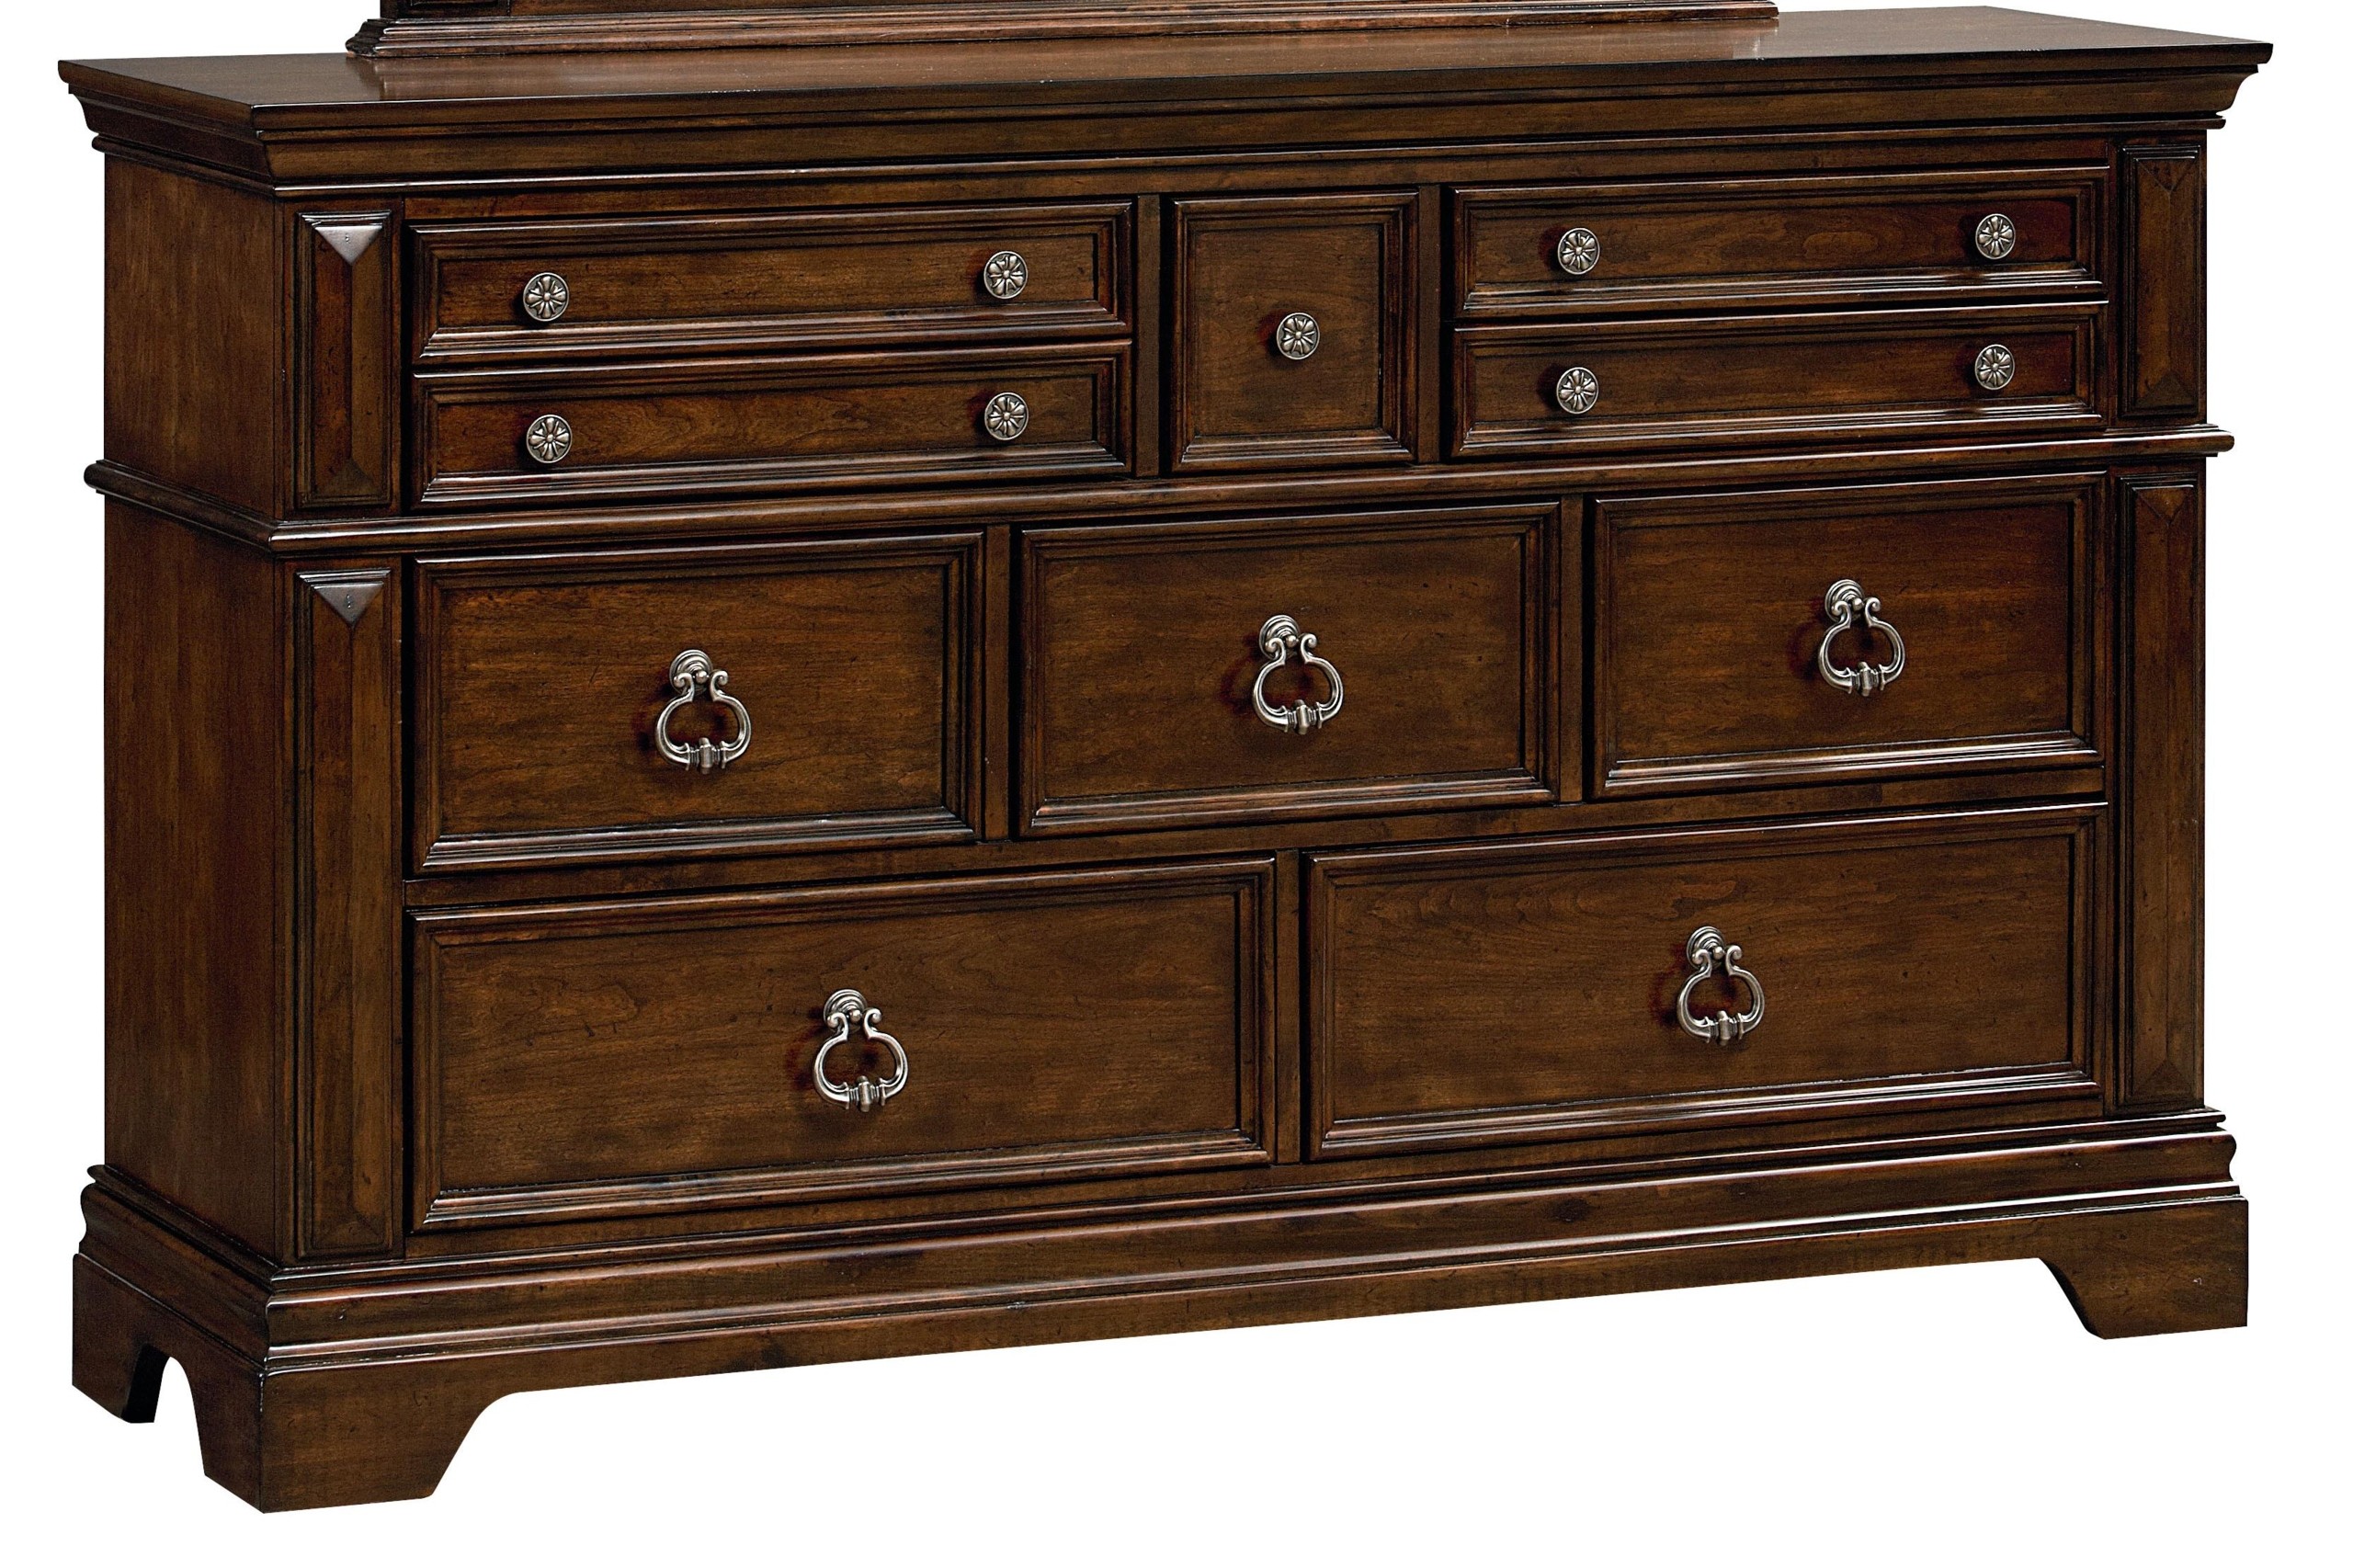 Standard furniture charleston 96009 8 drawer dresser with